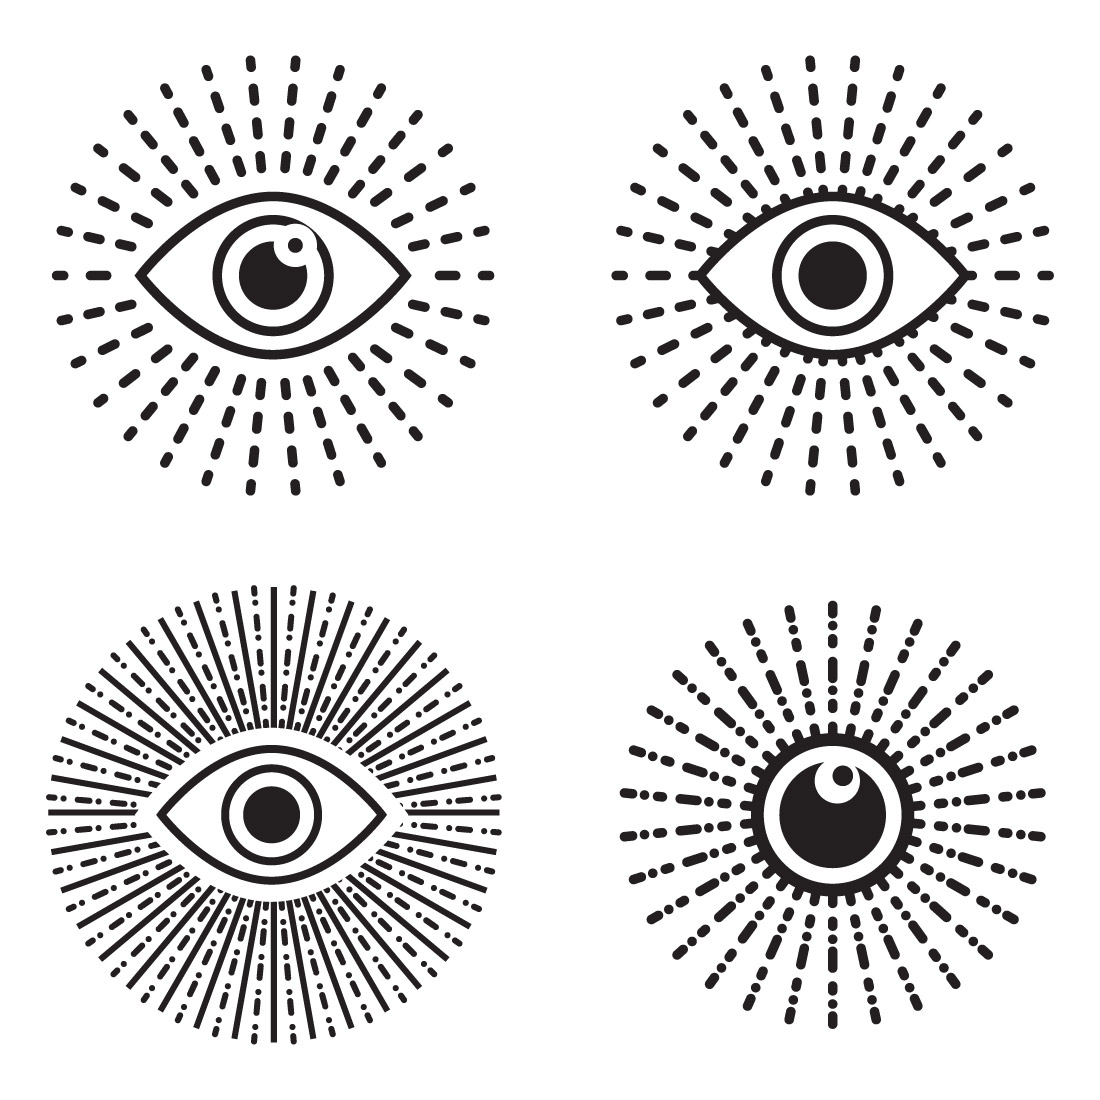 Abstract Eye Vision Logo, Creative Vision logo vector template 25390055  Vector Art at Vecteezy